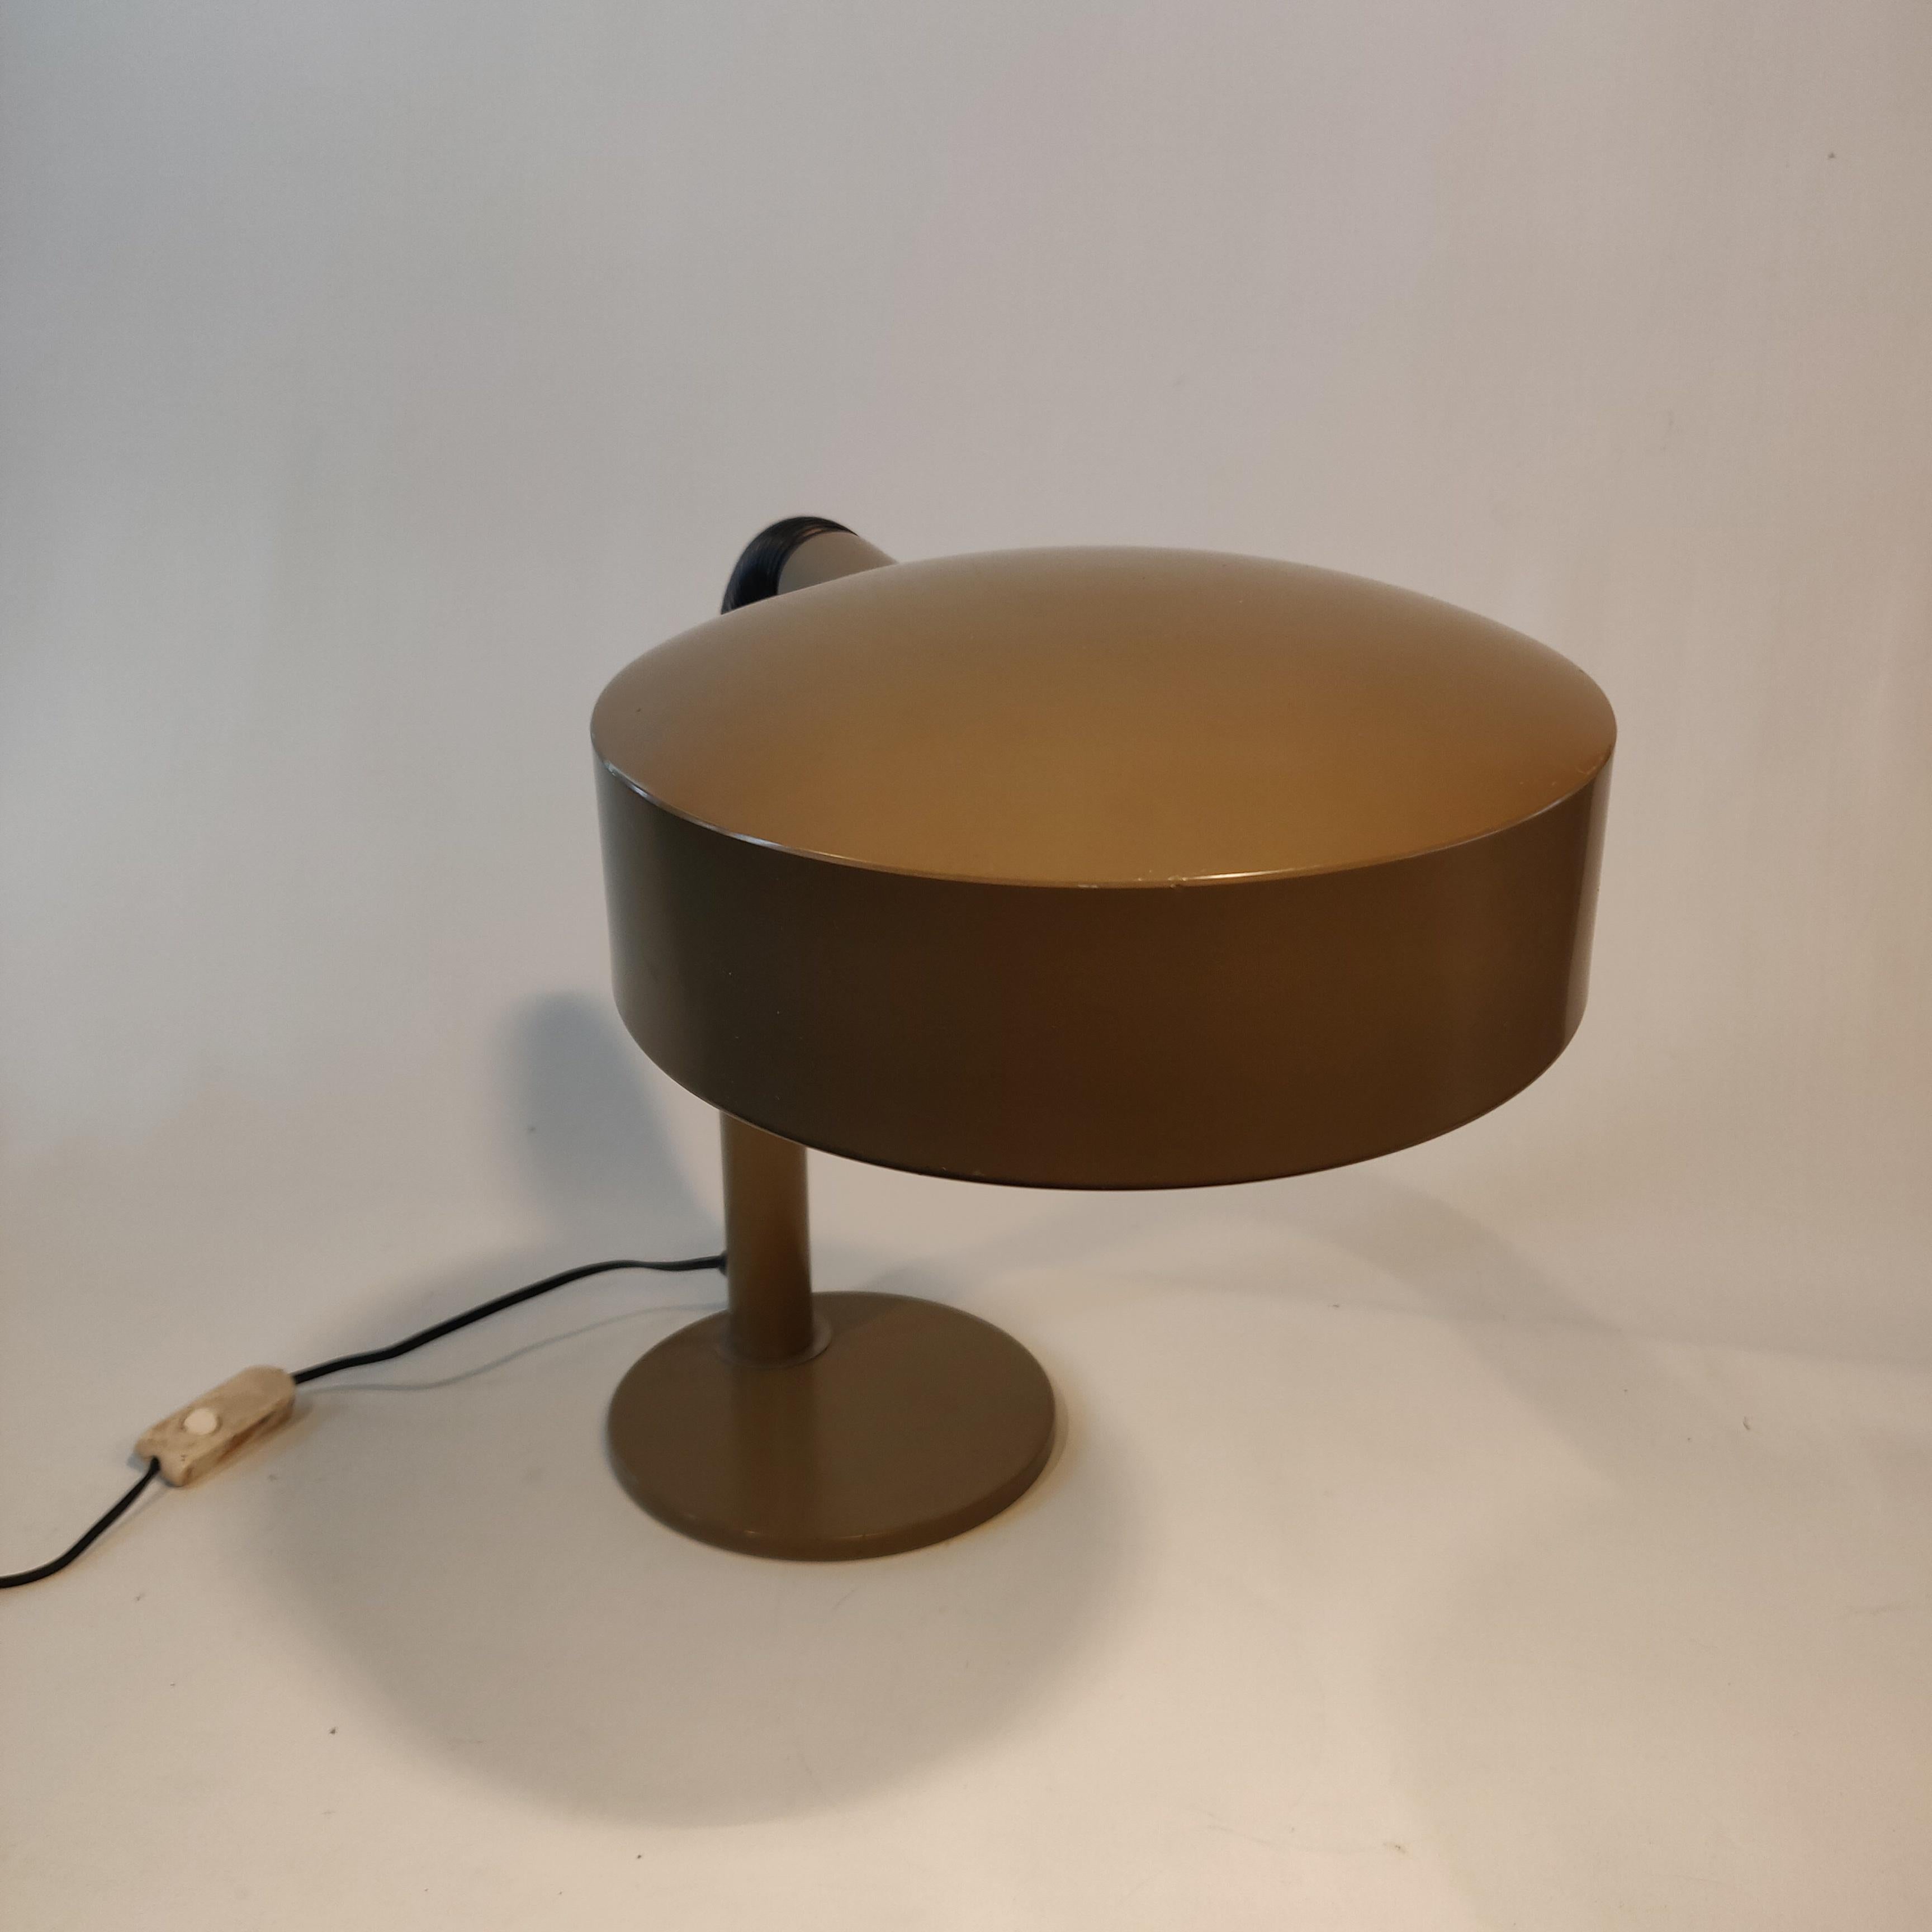 Dutch Design Hala Zeist Holland Lampe de bureau à col de cygne des années 1970, appelée lampe à casserole. Bras flexible, couleur brun taupe.

Hala est l'une des premières entreprises de luminaires des Pays-Bas, créée en 1932 dans la ville de Zeist,